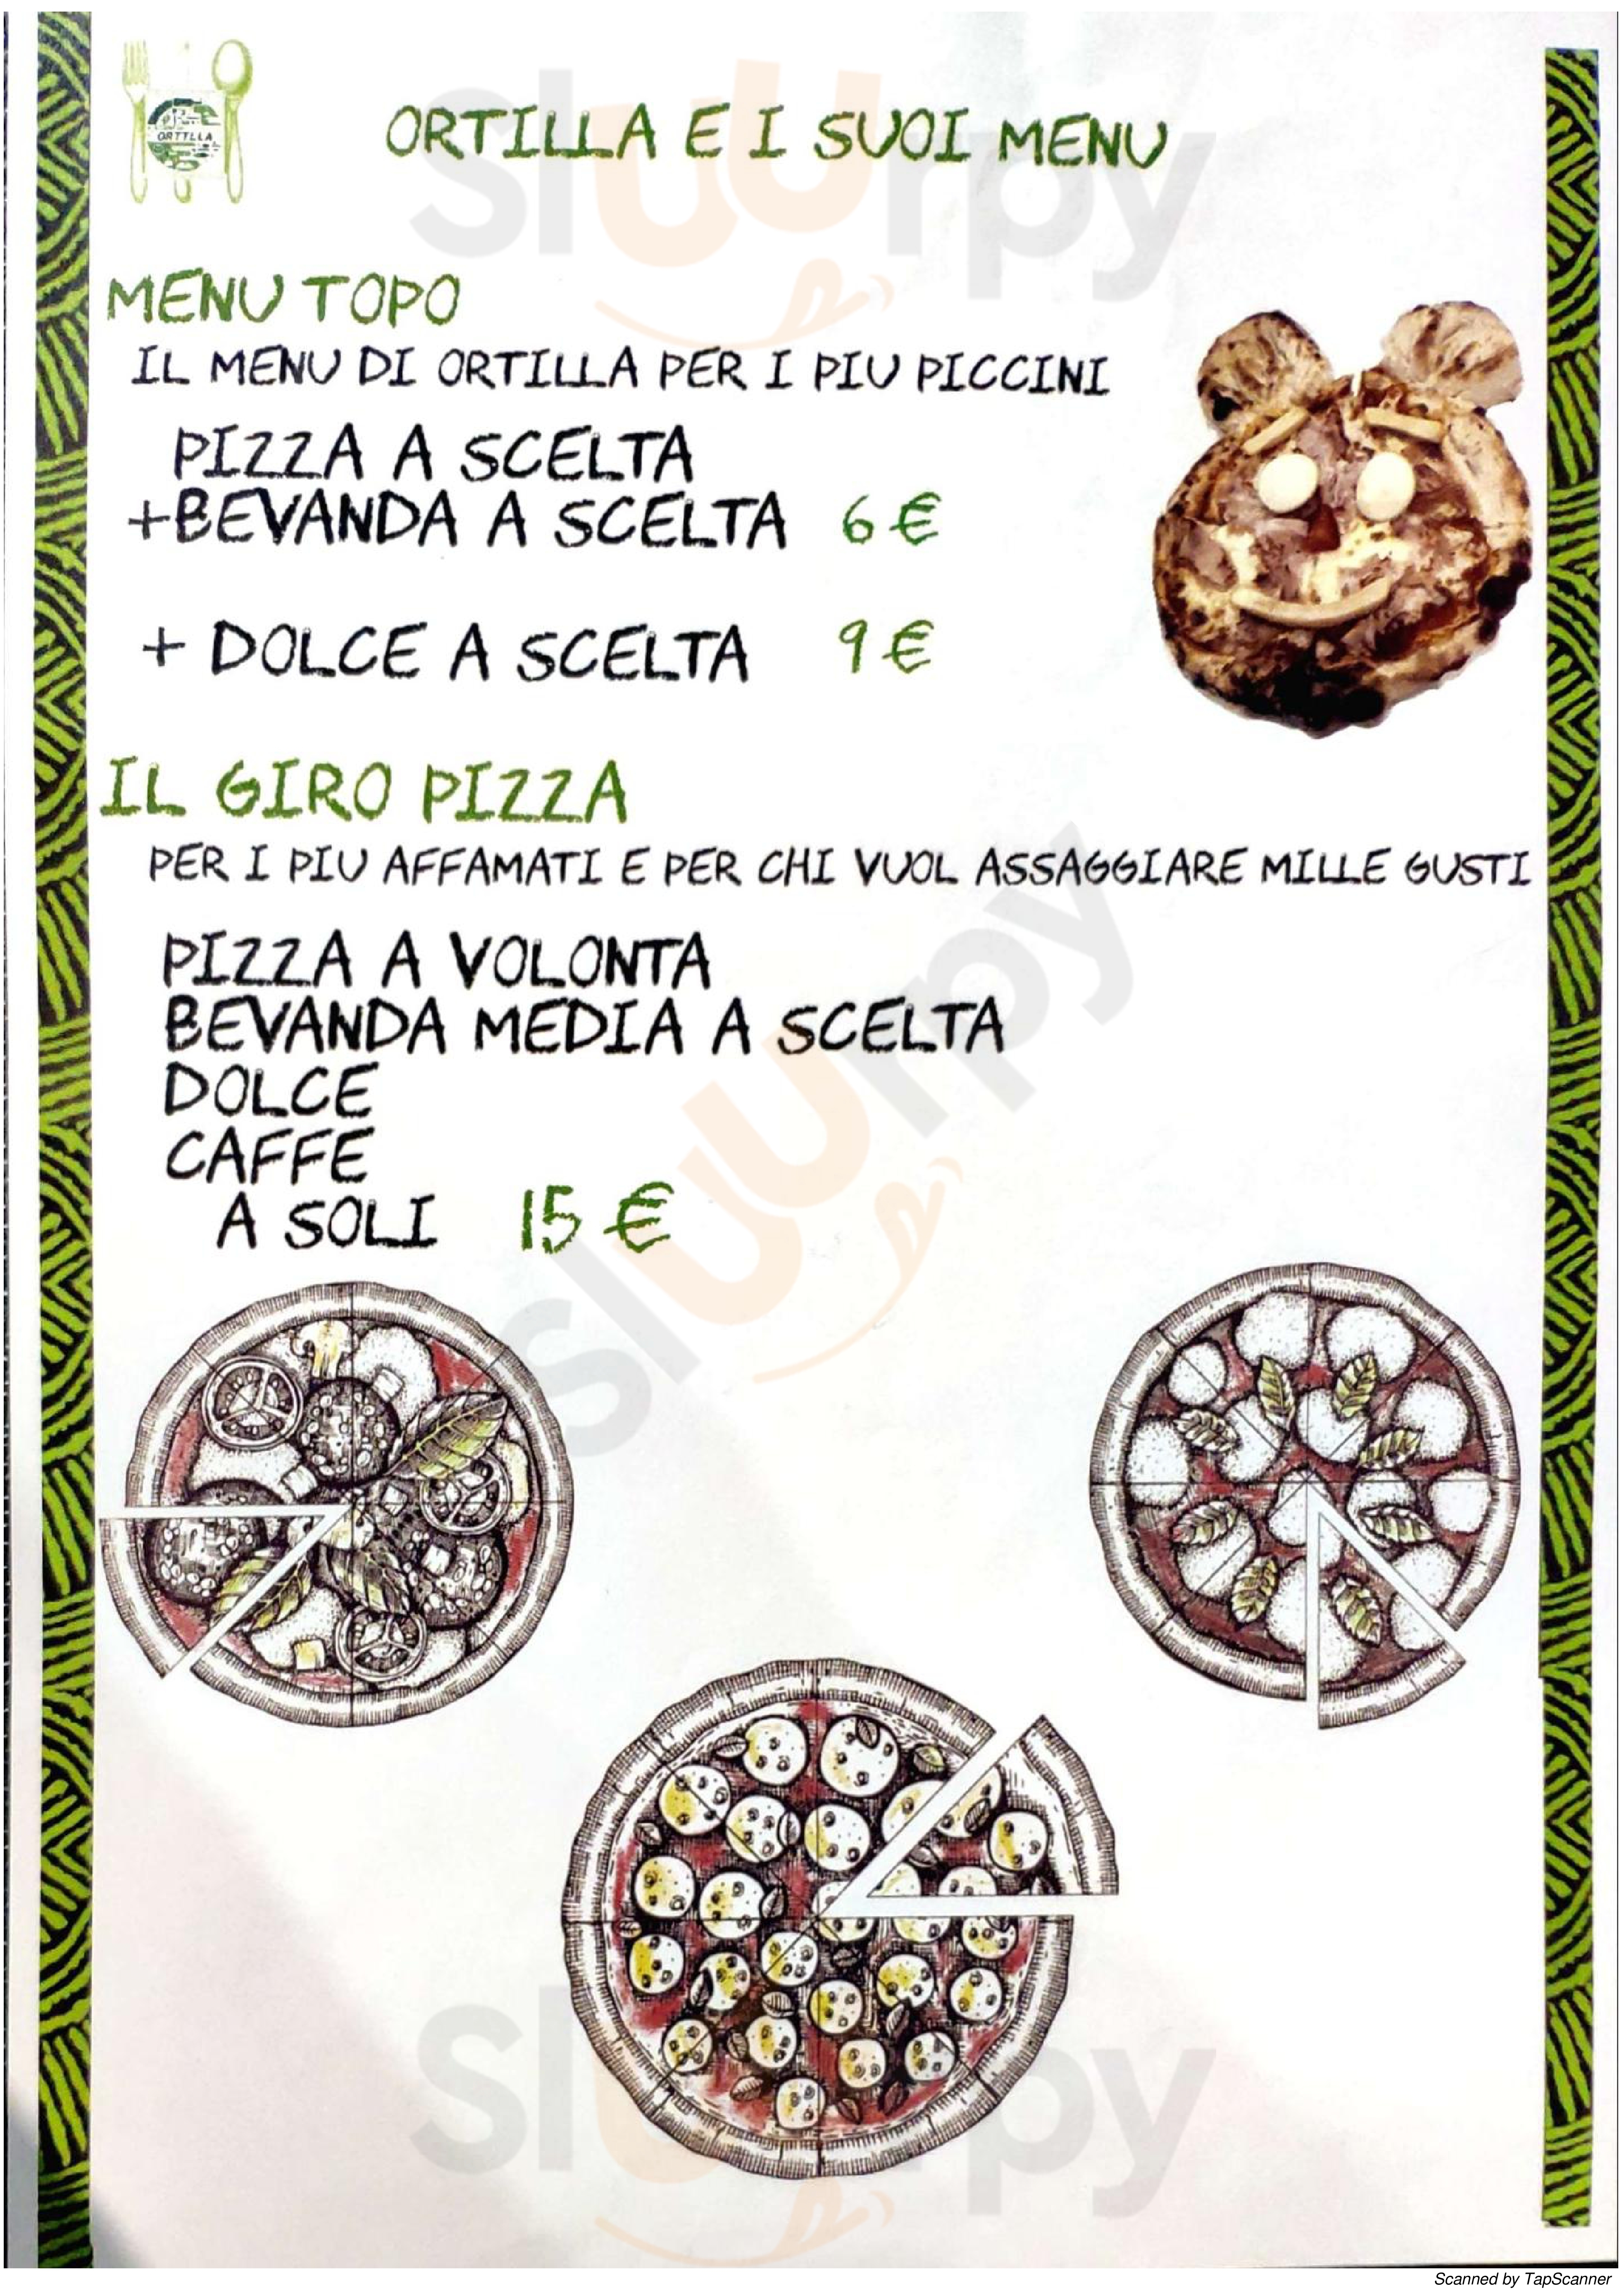 Pizzeria Ortilla Coazze menù 1 pagina